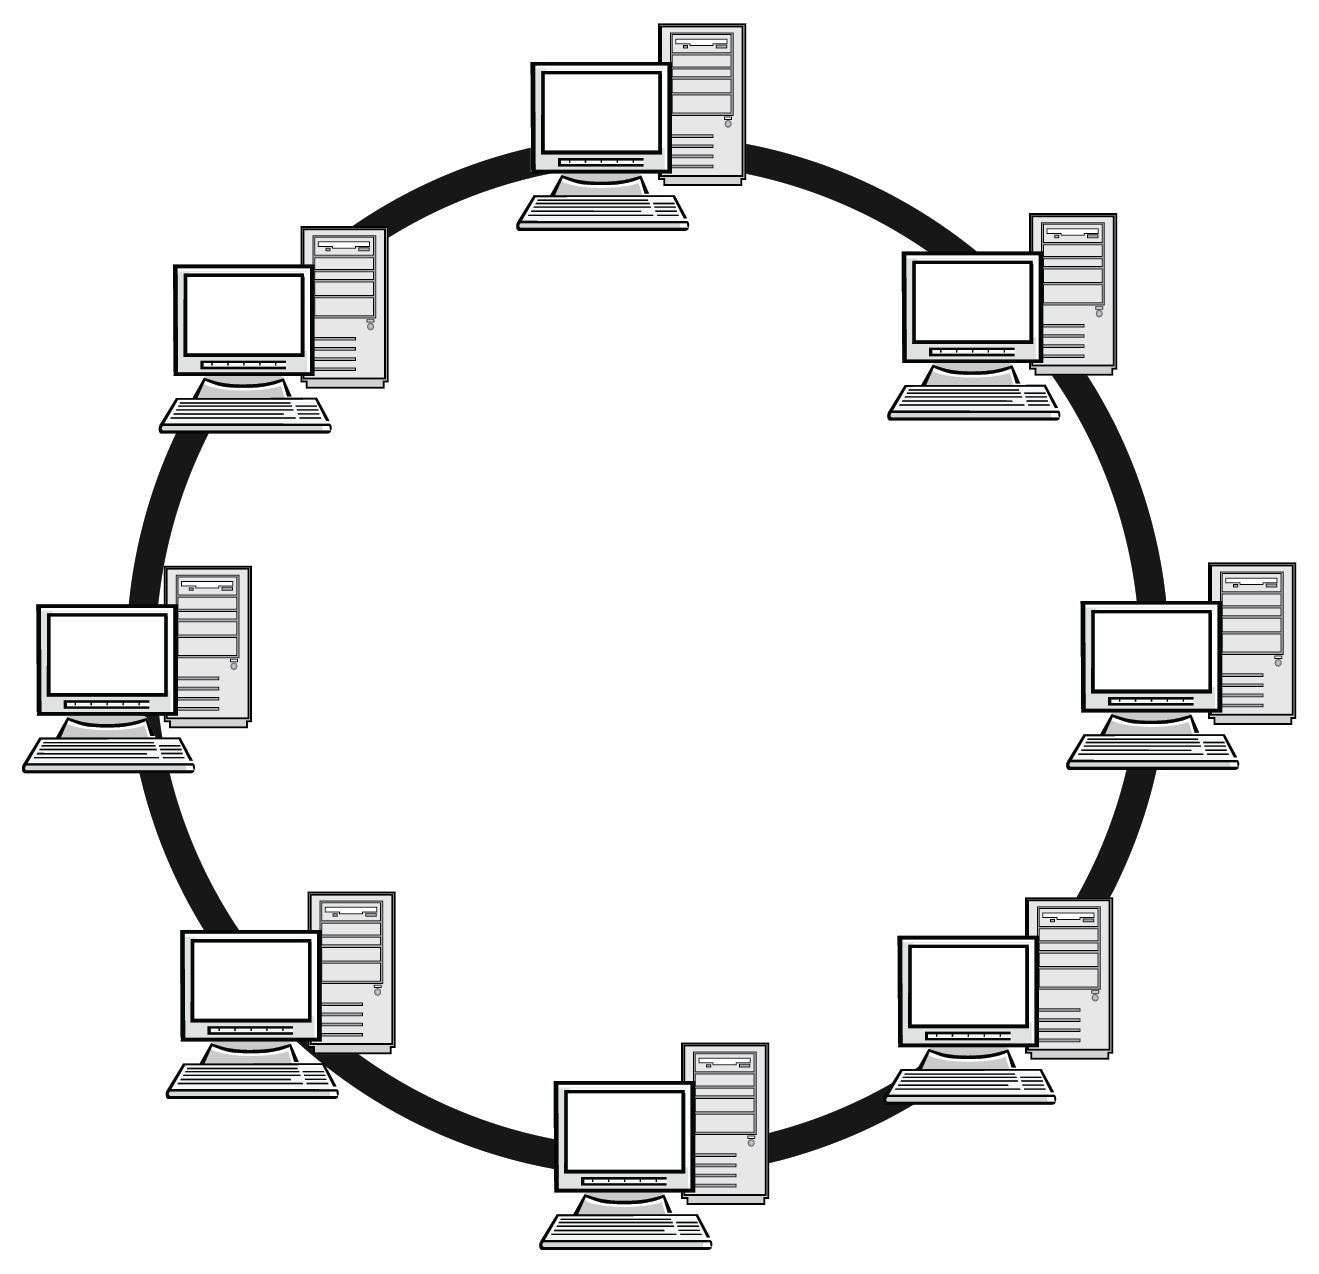 Артикул сеть. Топология локальных сетей кольцо. Топология локальных сетей шина звезда кольцо. Кольцо (топология компьютерной сети). Кольцевая топология локальной сети.